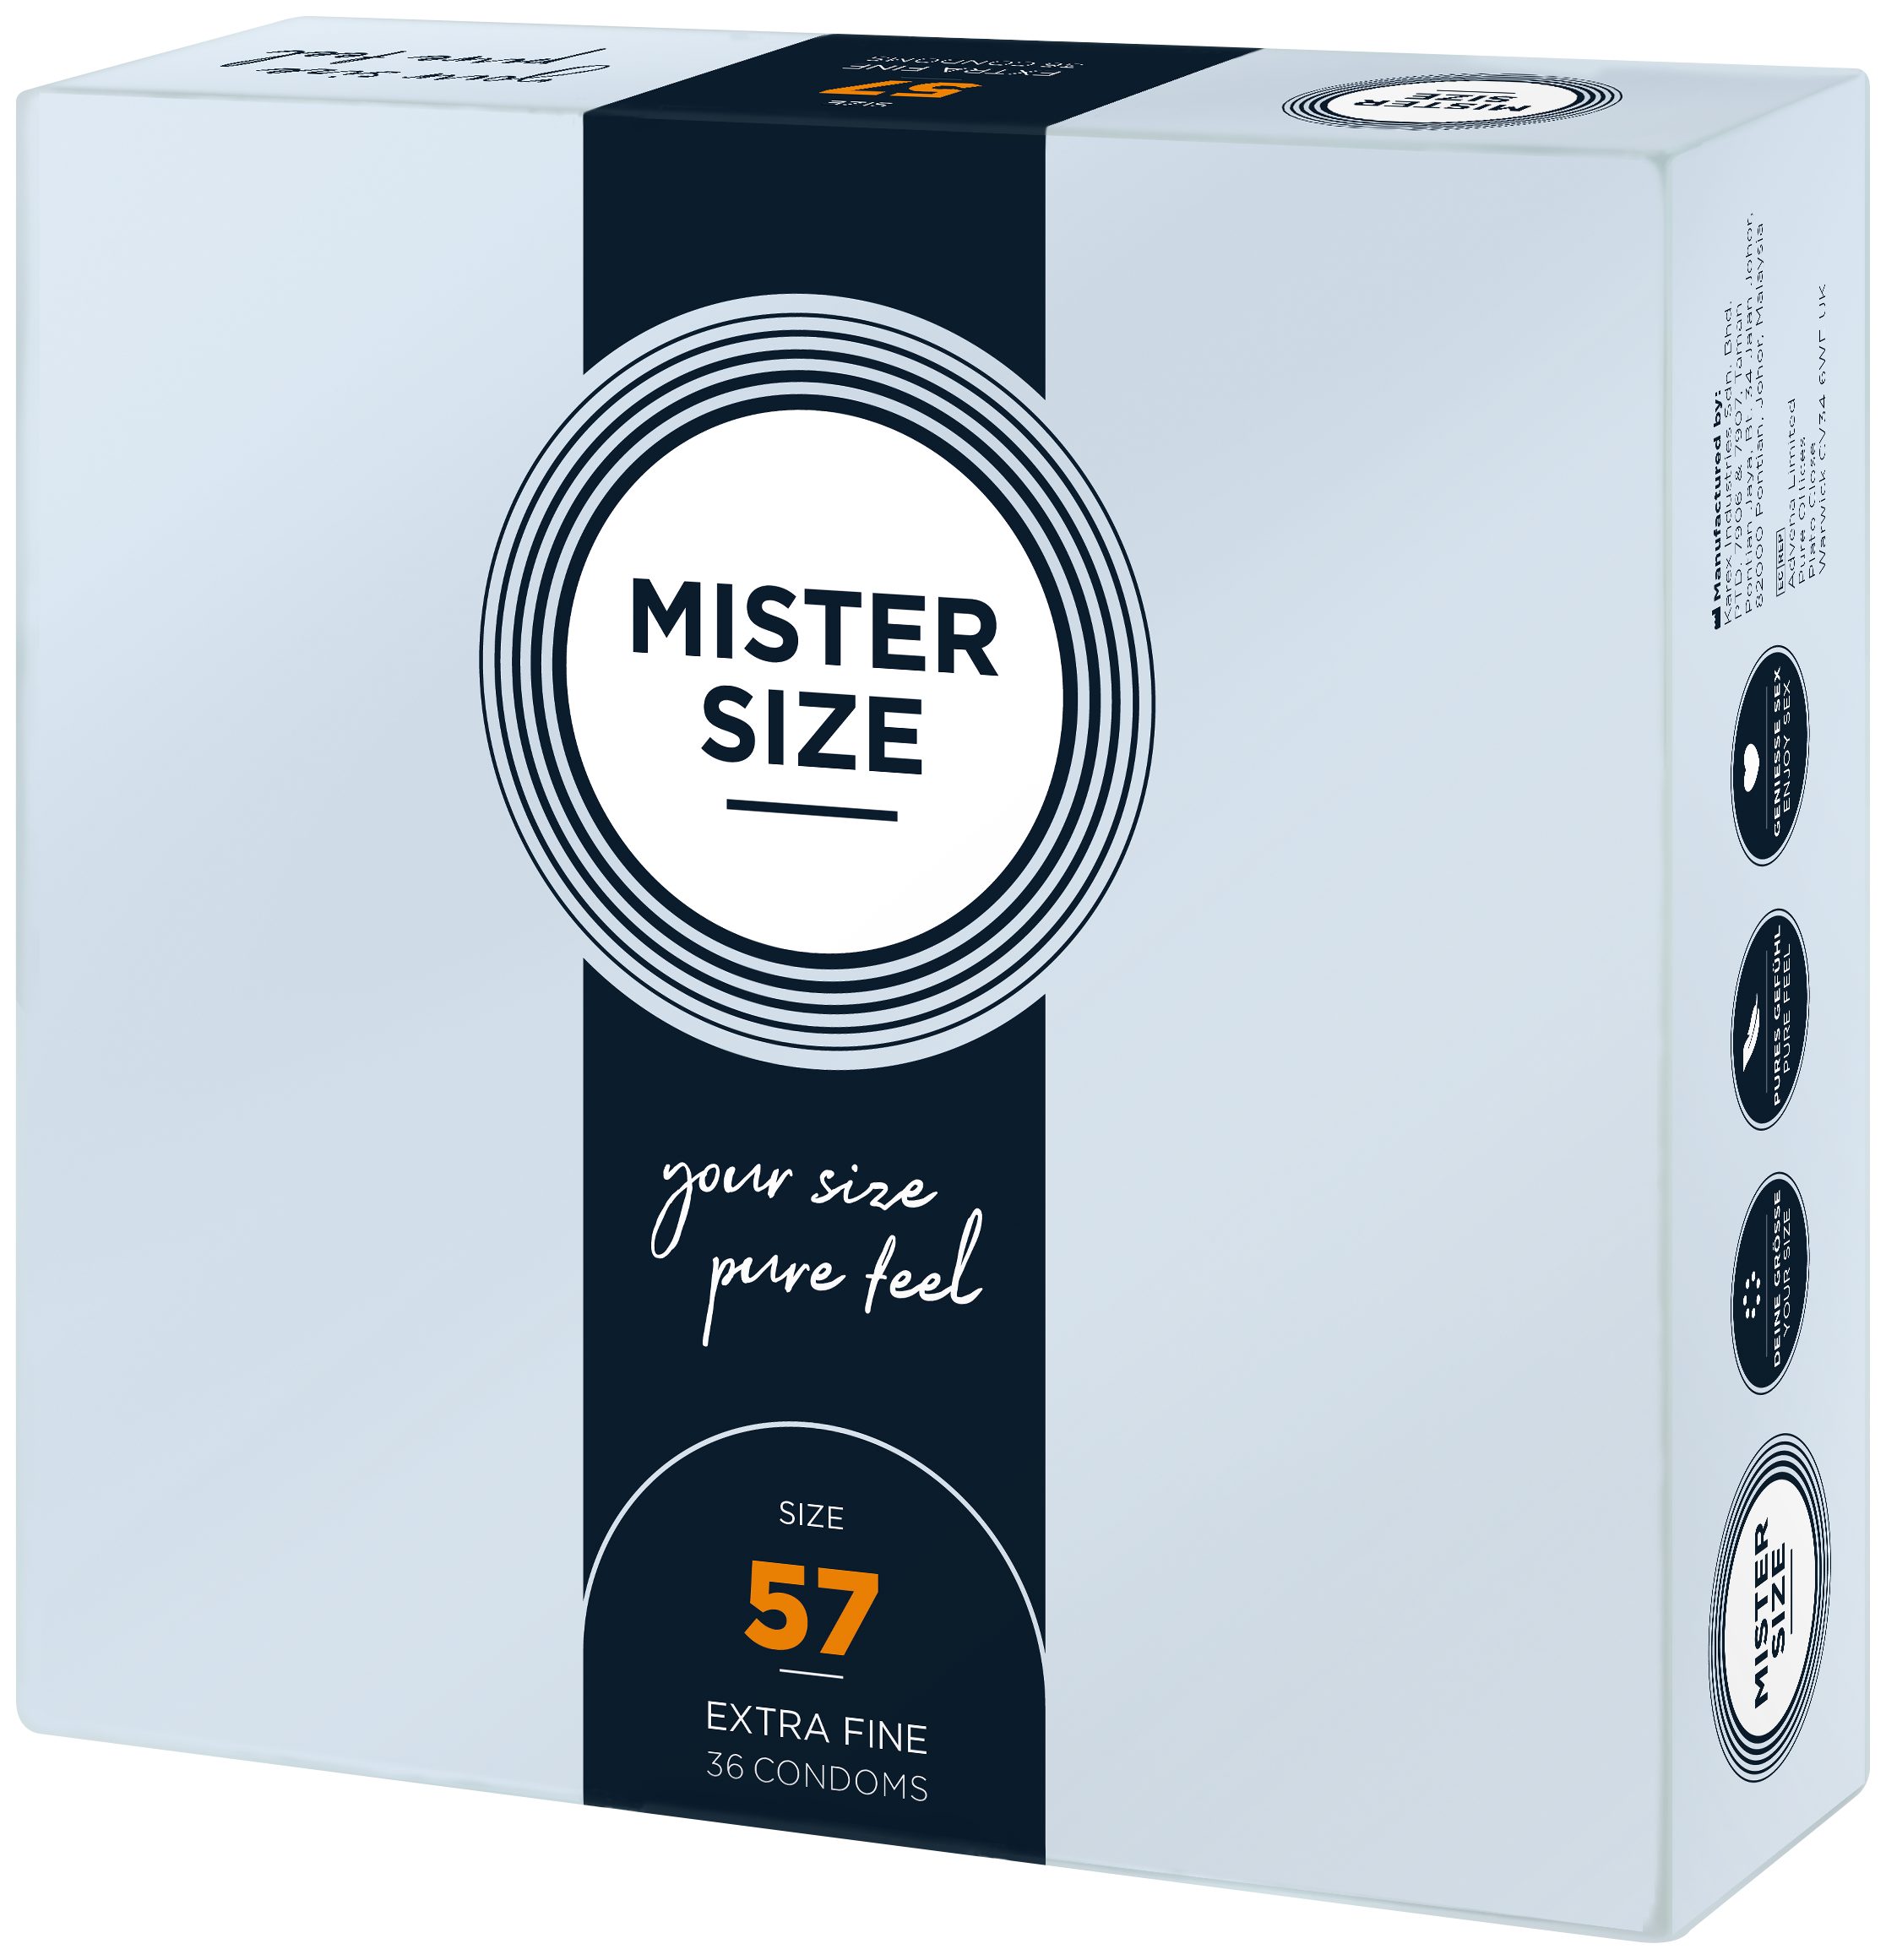 MISTER gefühlsecht Breite SIZE feucht Kondome 57mm, Nominale & Stück, 36